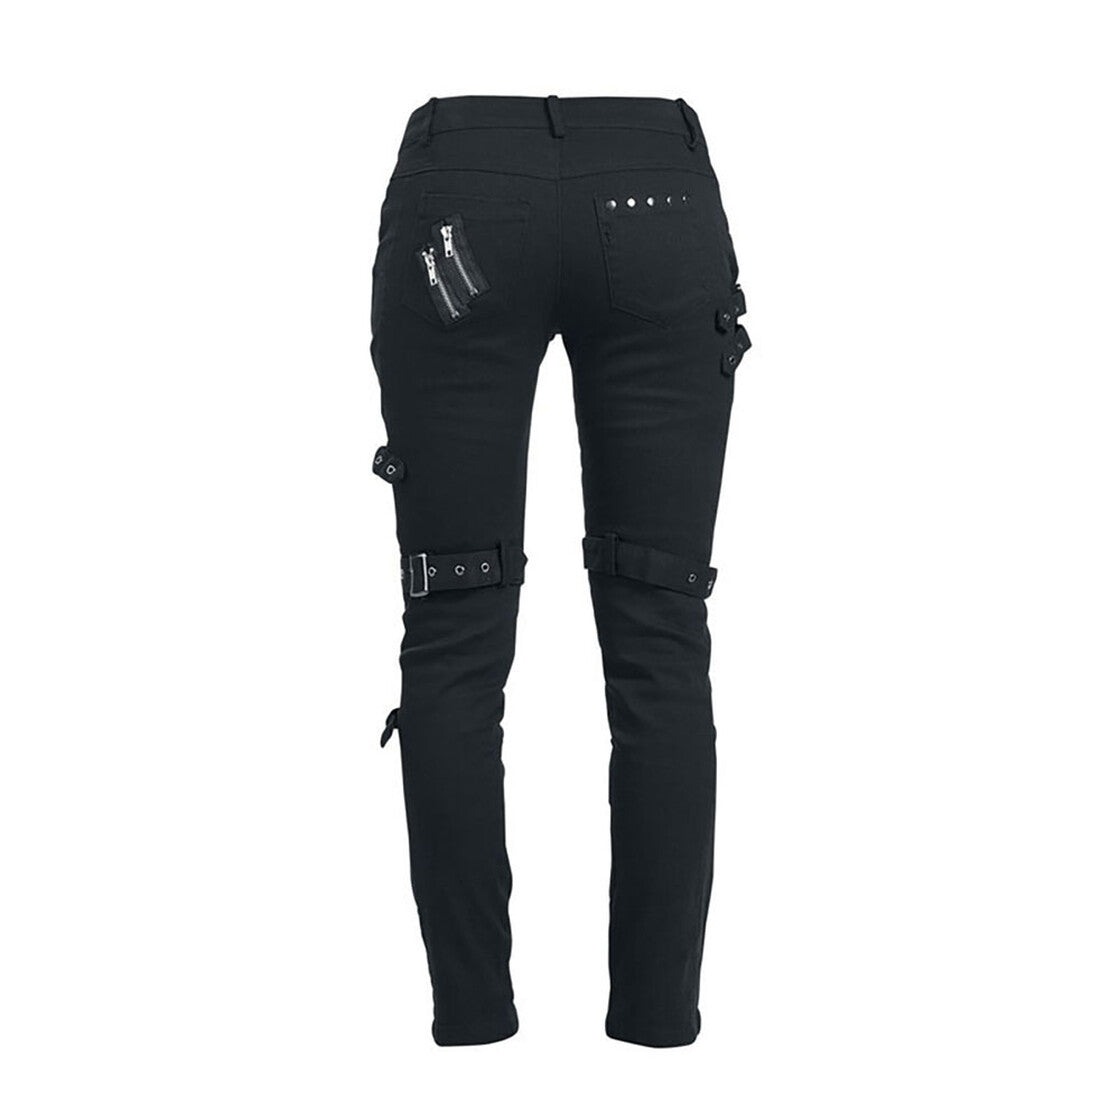 Schwarze Jeans Punk Trousers mit vielen Aufnähern, Riemen und Reißverschlüssen von Alcatraz